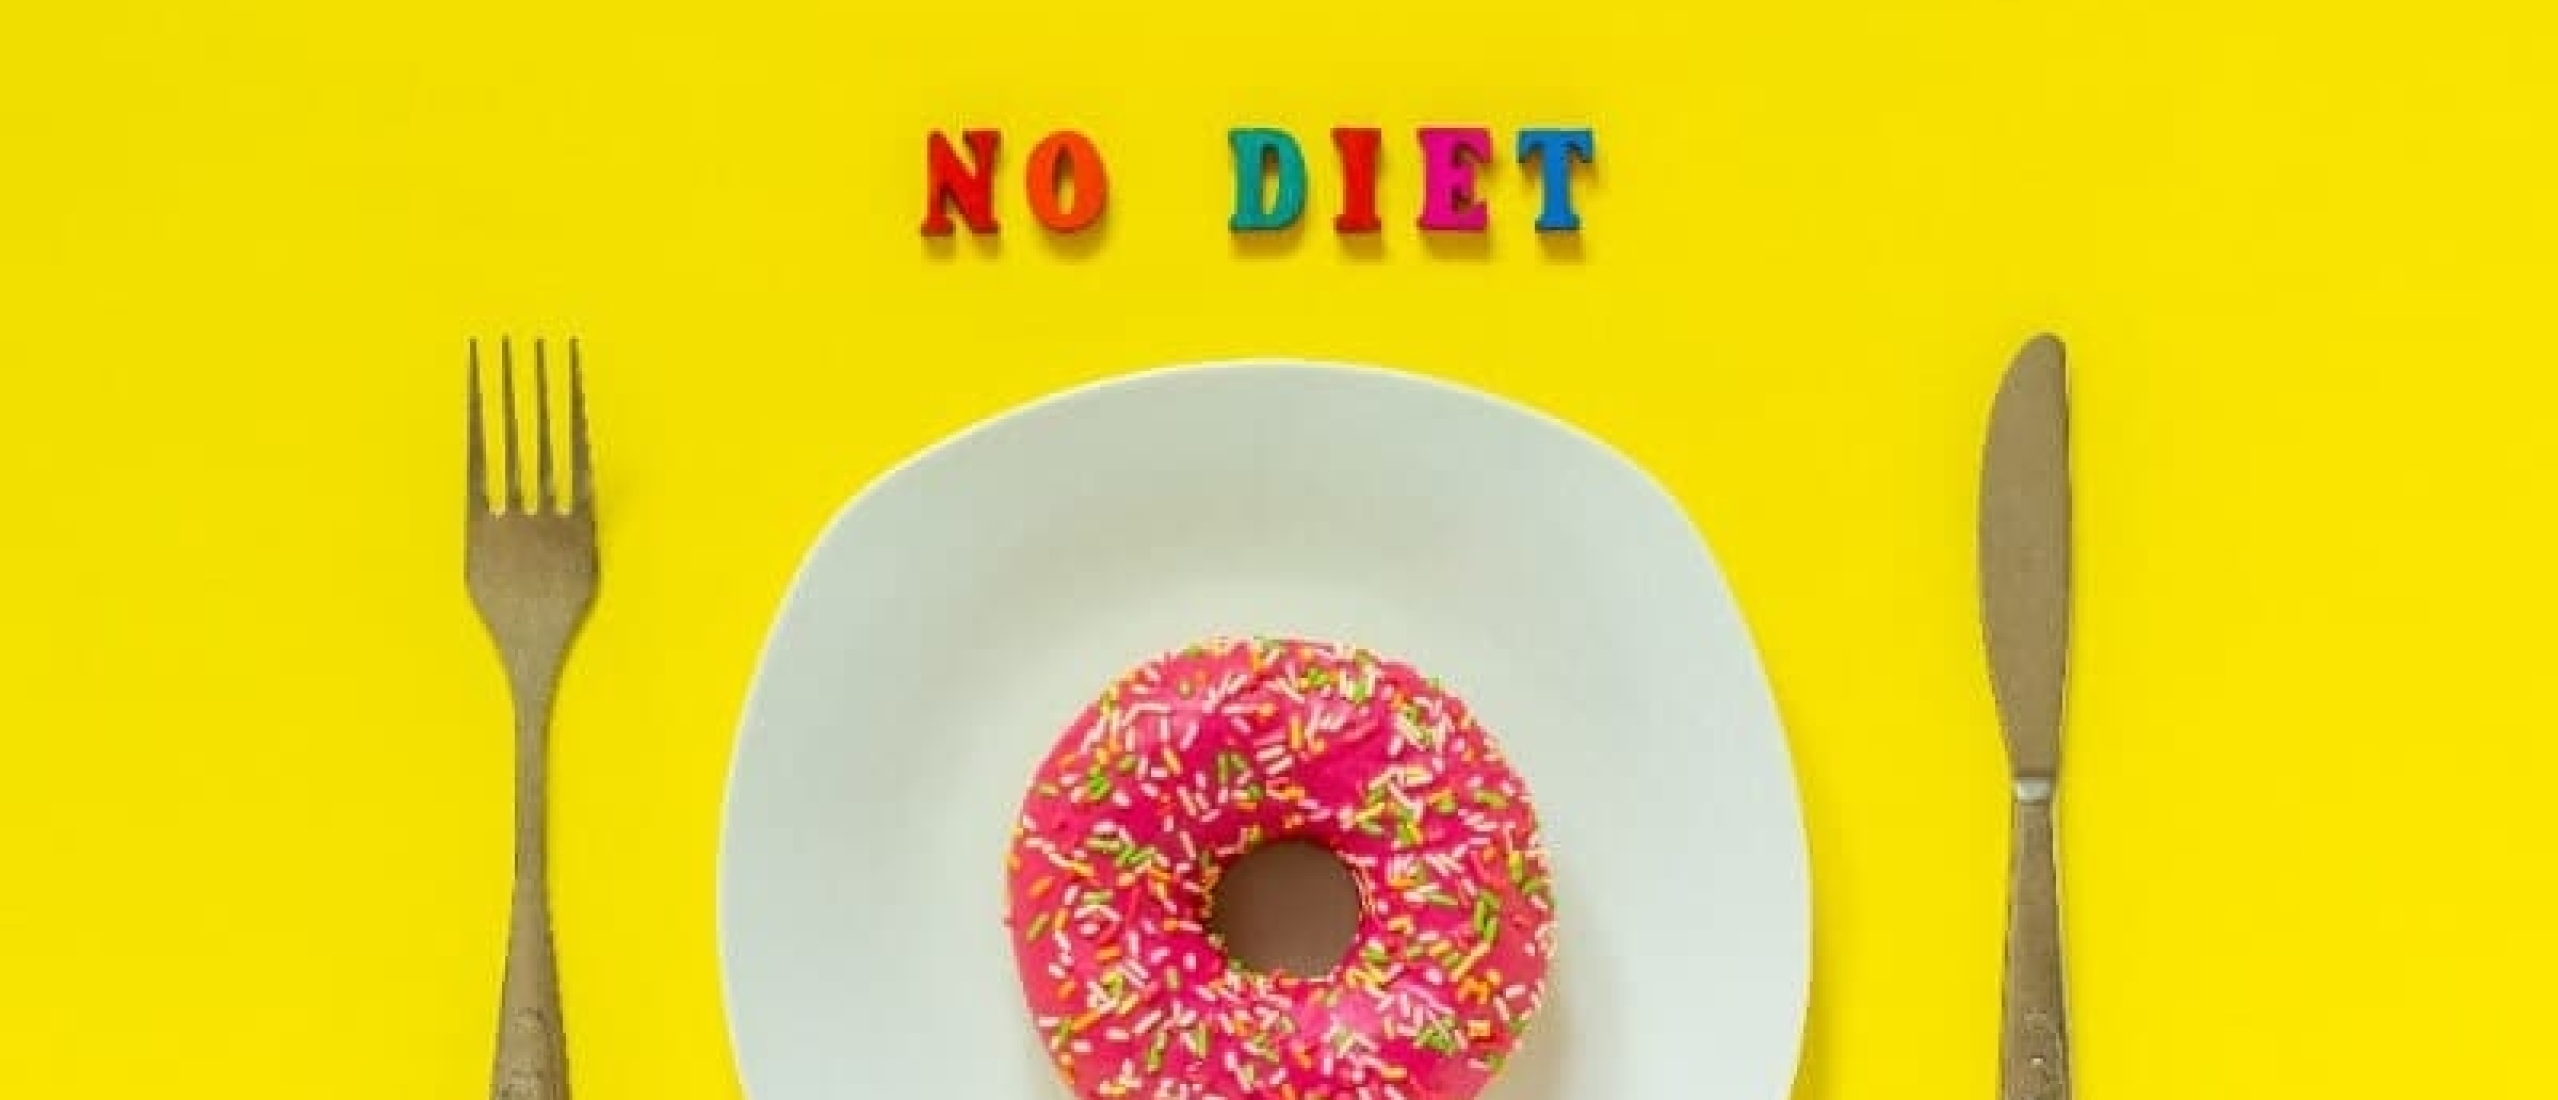 Afvallen zonder dieet